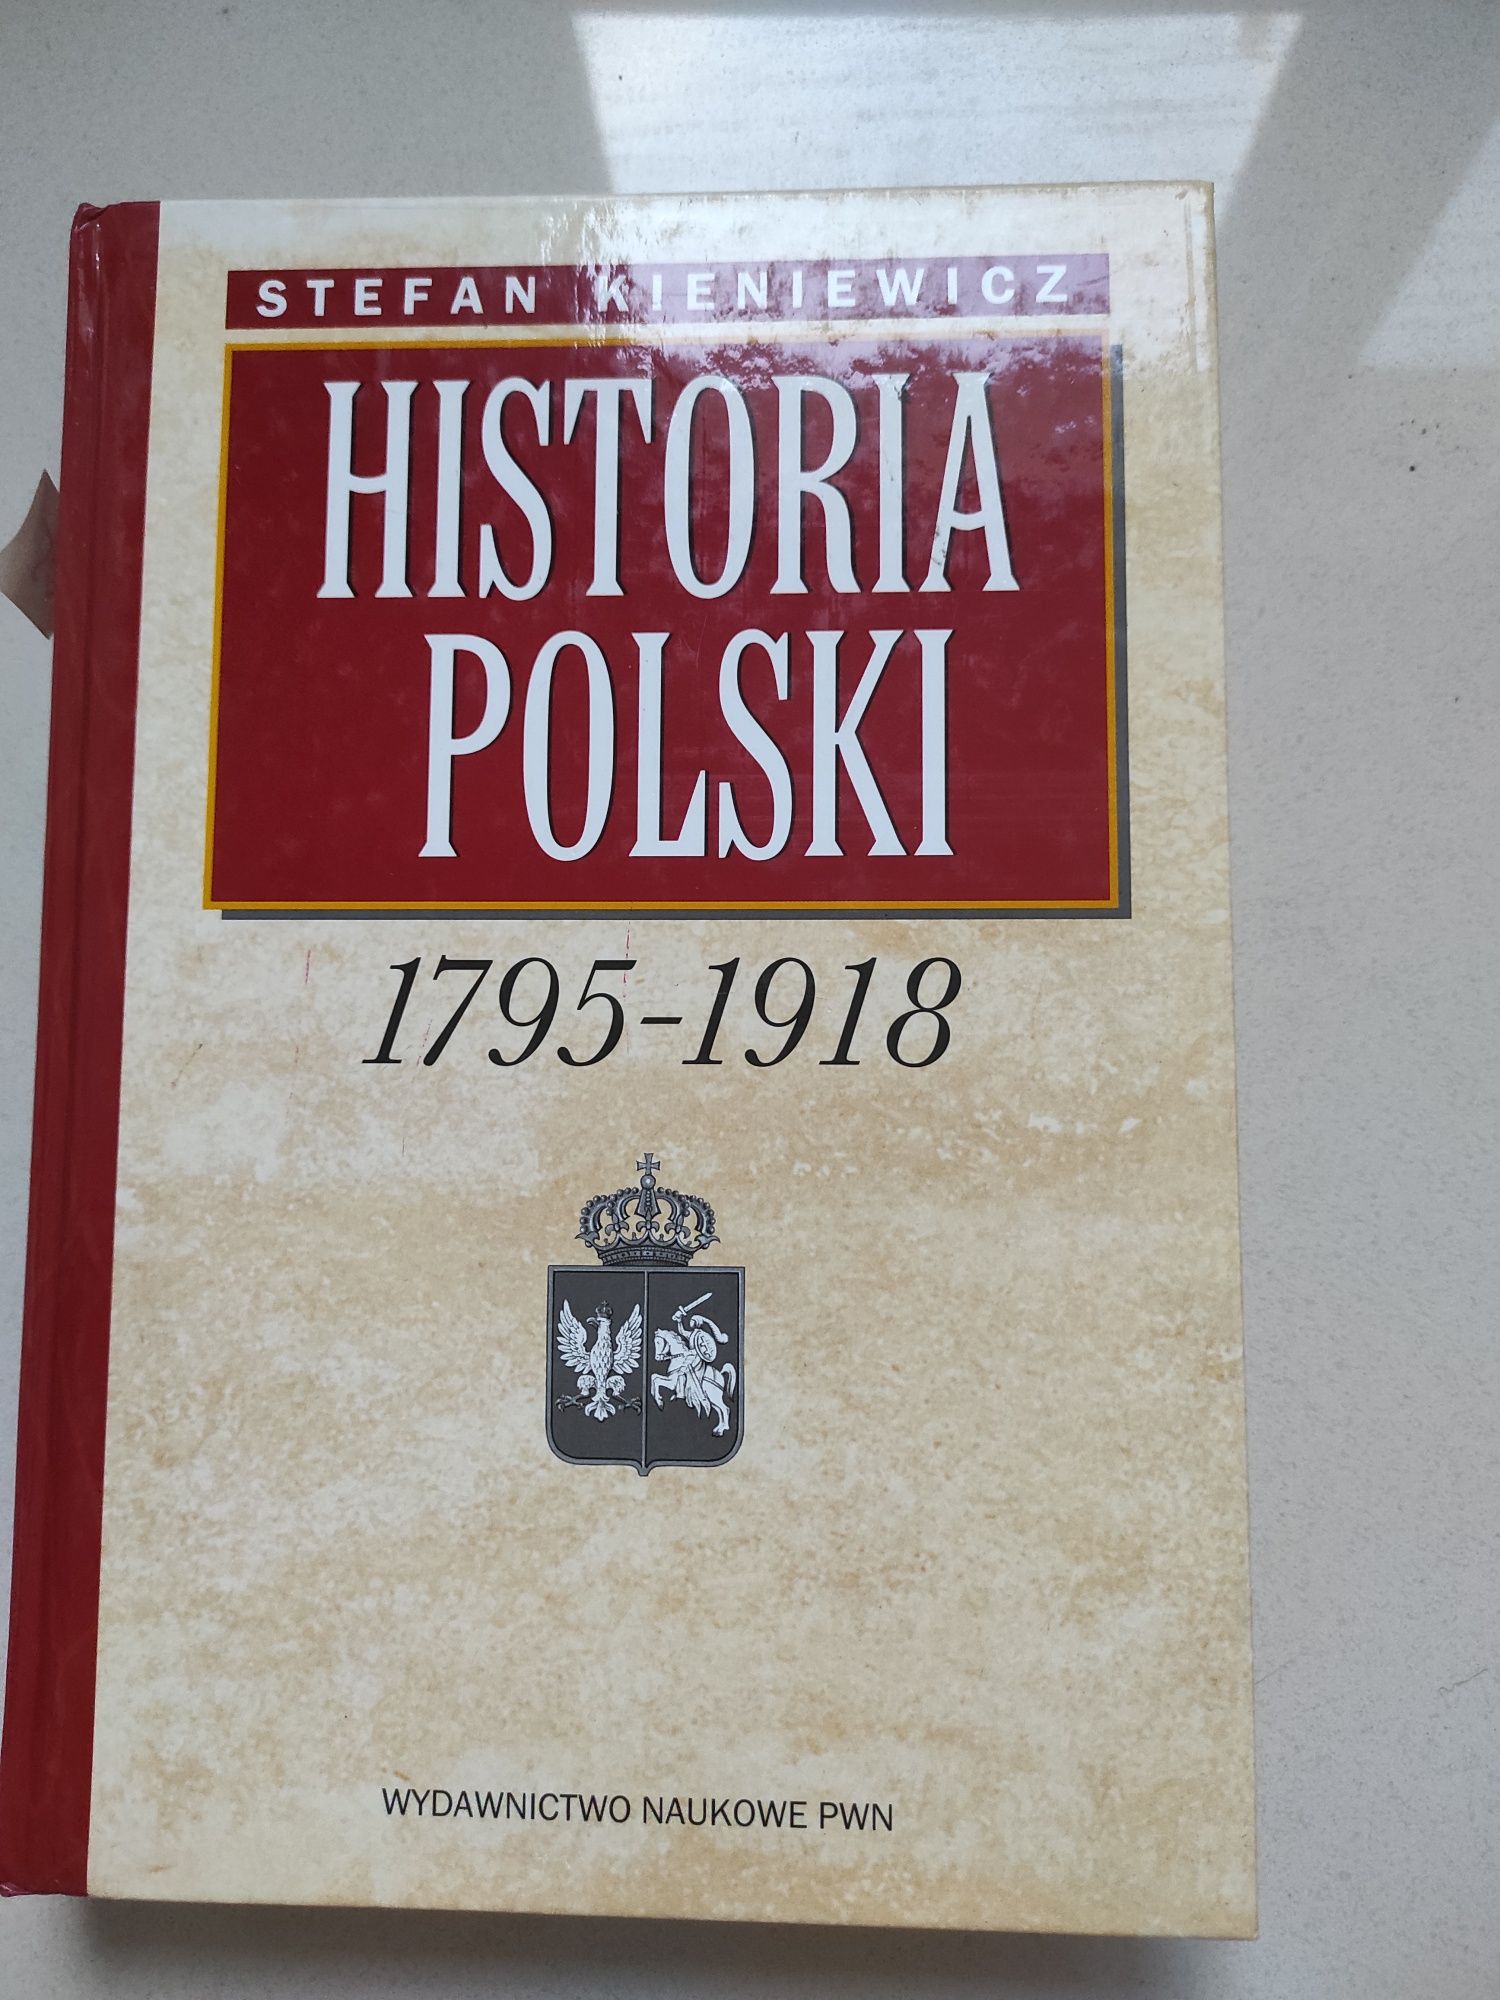 35 Książka pt "Historia Polski